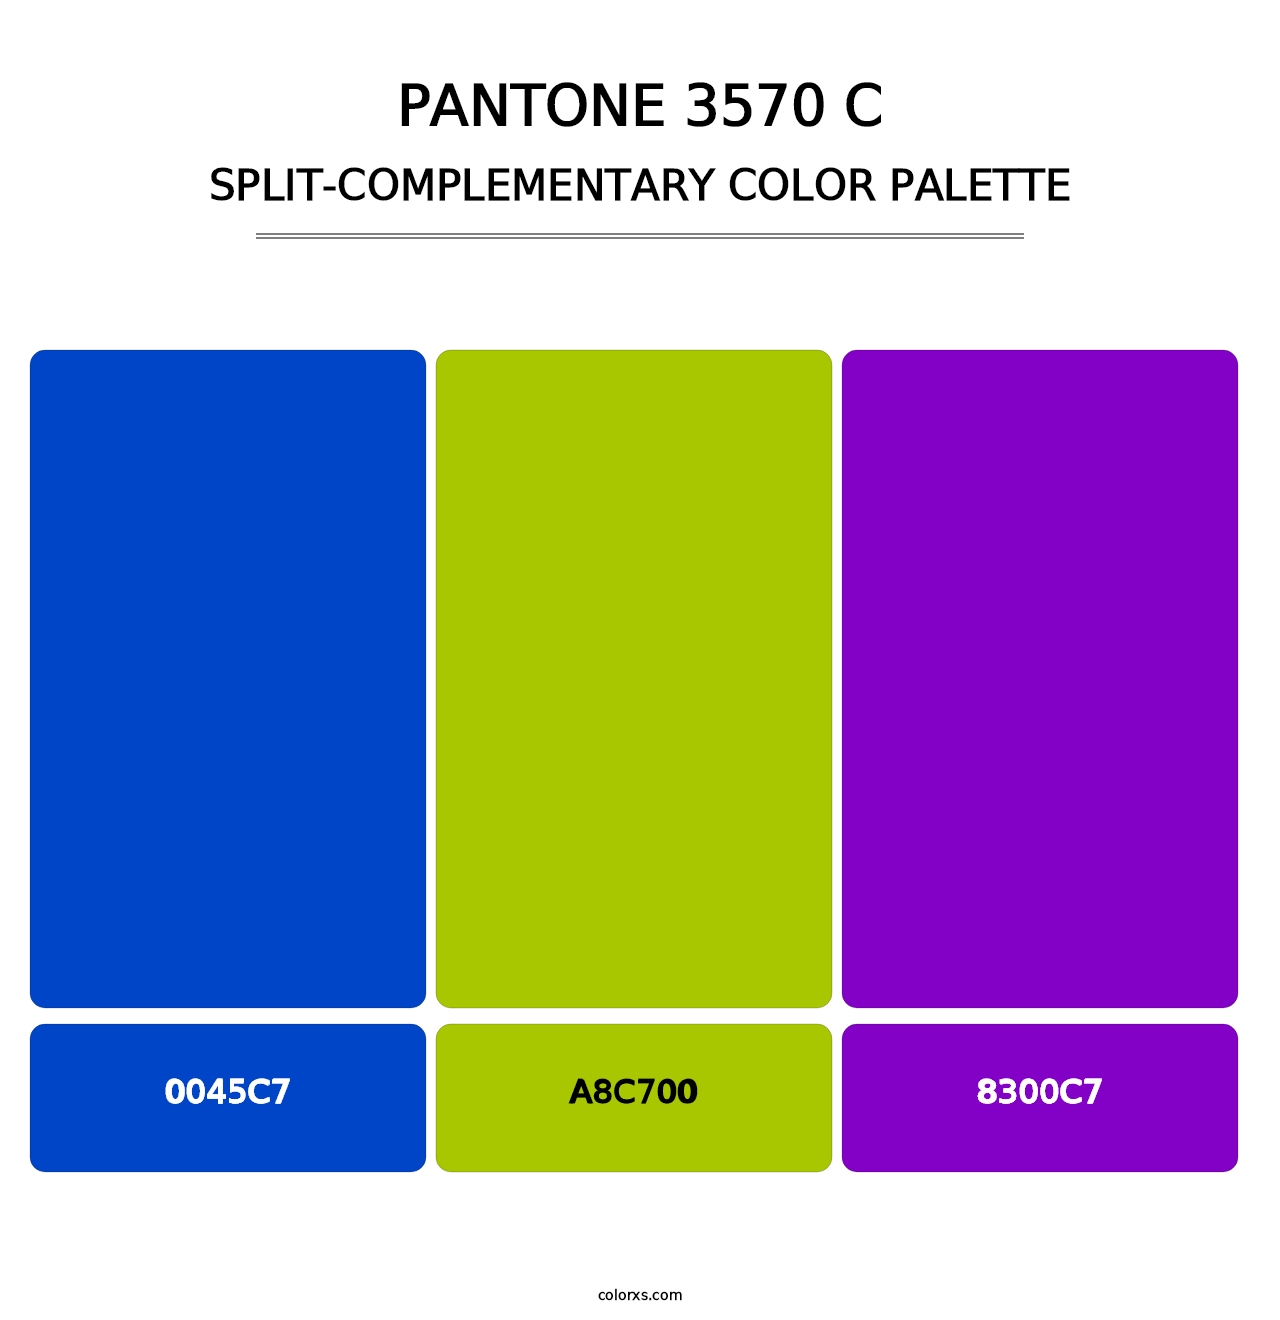 PANTONE 3570 C - Split-Complementary Color Palette